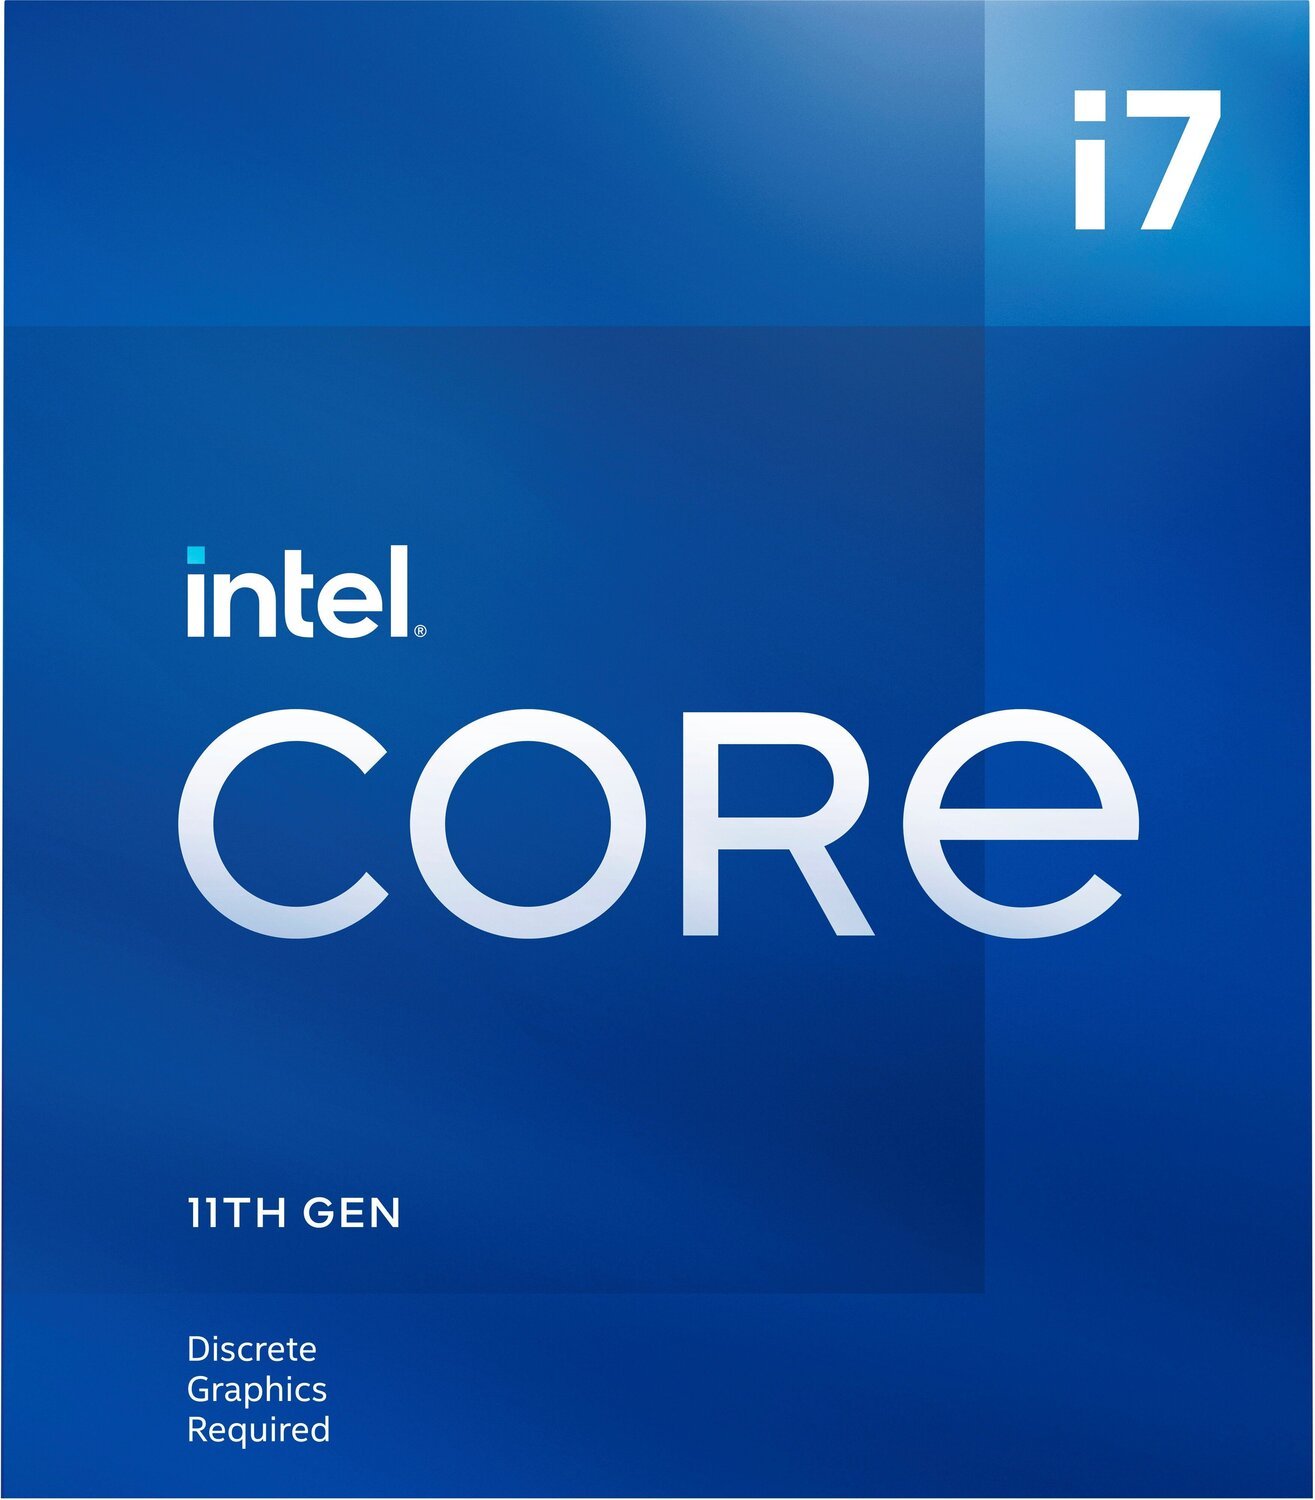 Процесор Intel Core i7-11700F 8/16 2.5GHz 16M LGA1200 65W w/o graphics box (BX8070811700F)фото